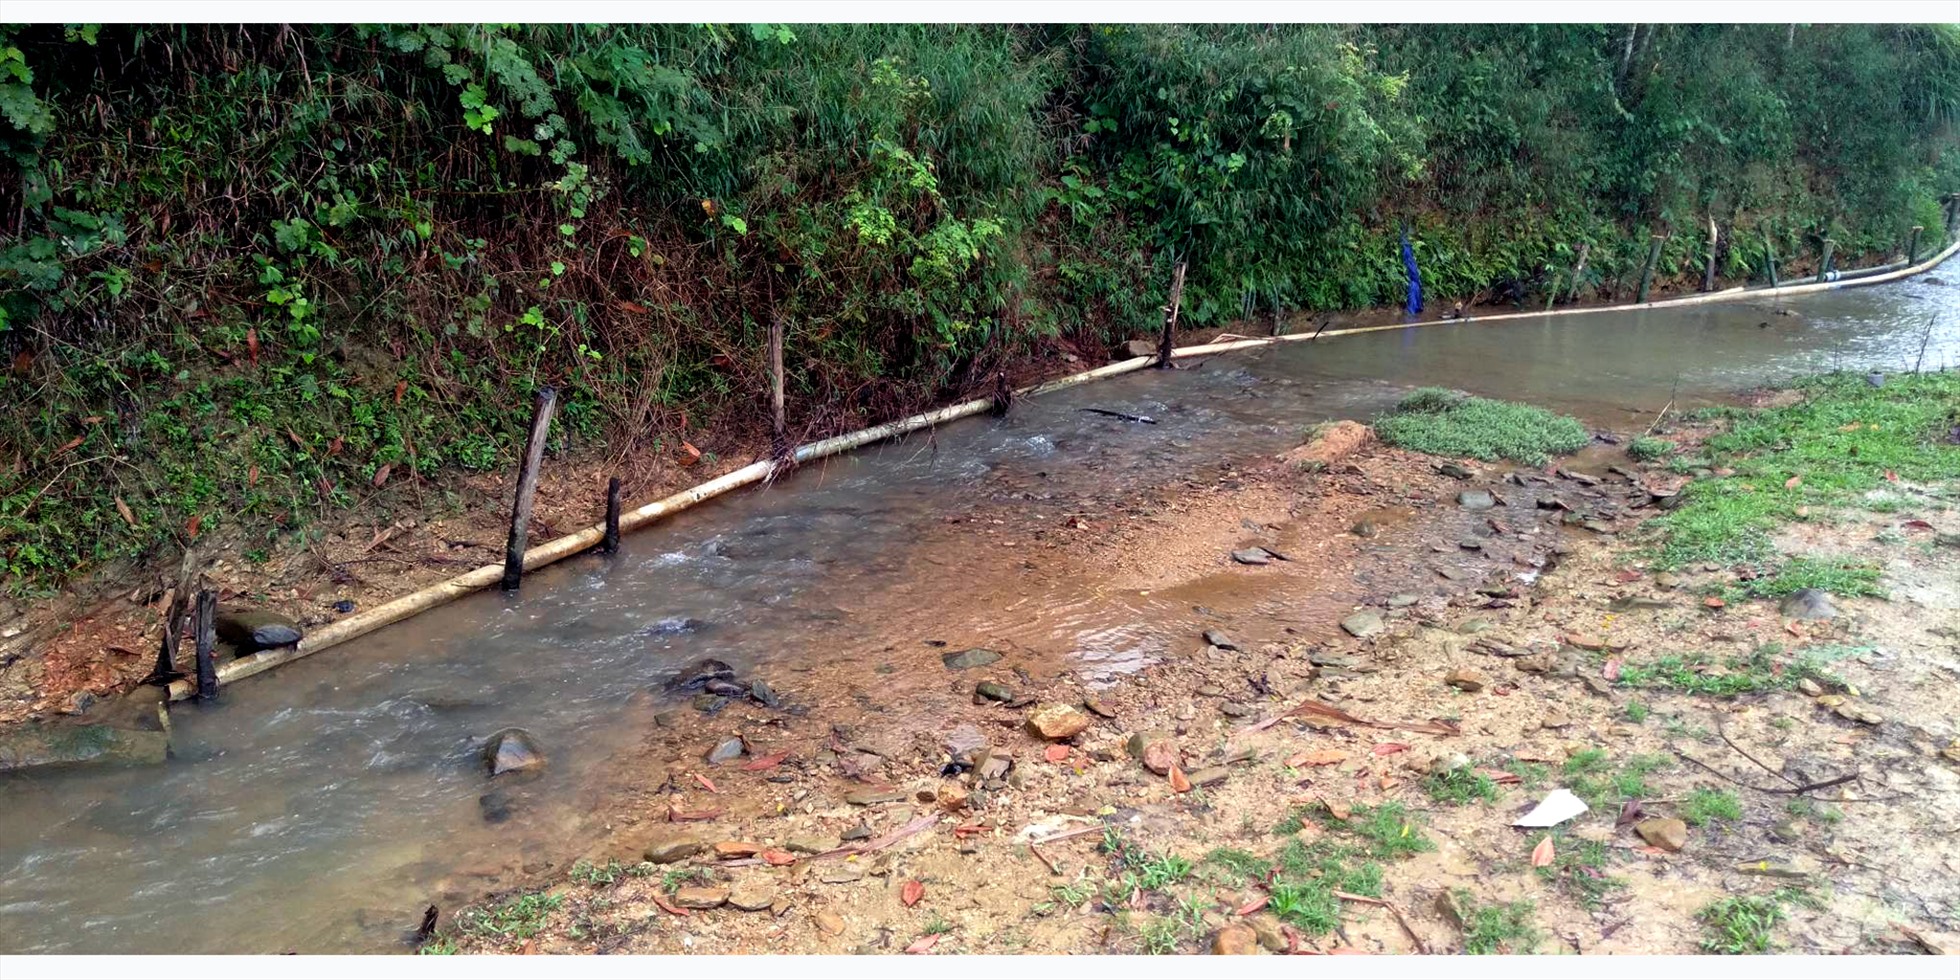 Trang trại chăn nuôi lợn của người dân thôn Quyết Thắng xã Sơn Kim 2 bắt ống nước xả trực tiếp ra dòng suối. Ảnh: Minh Lý